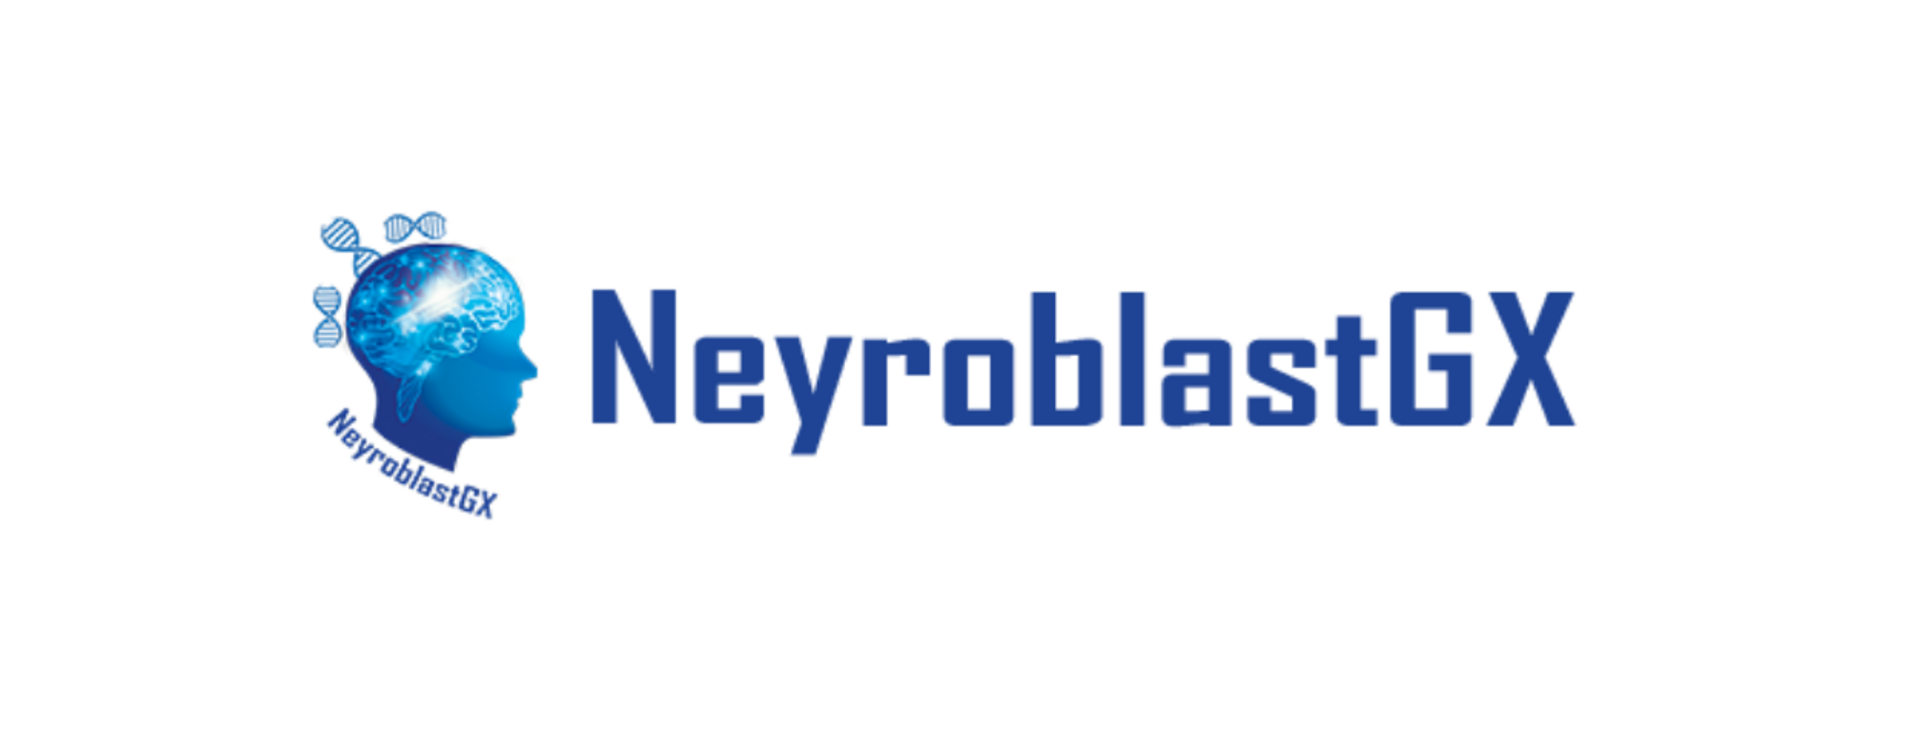 NeyroBlastGX